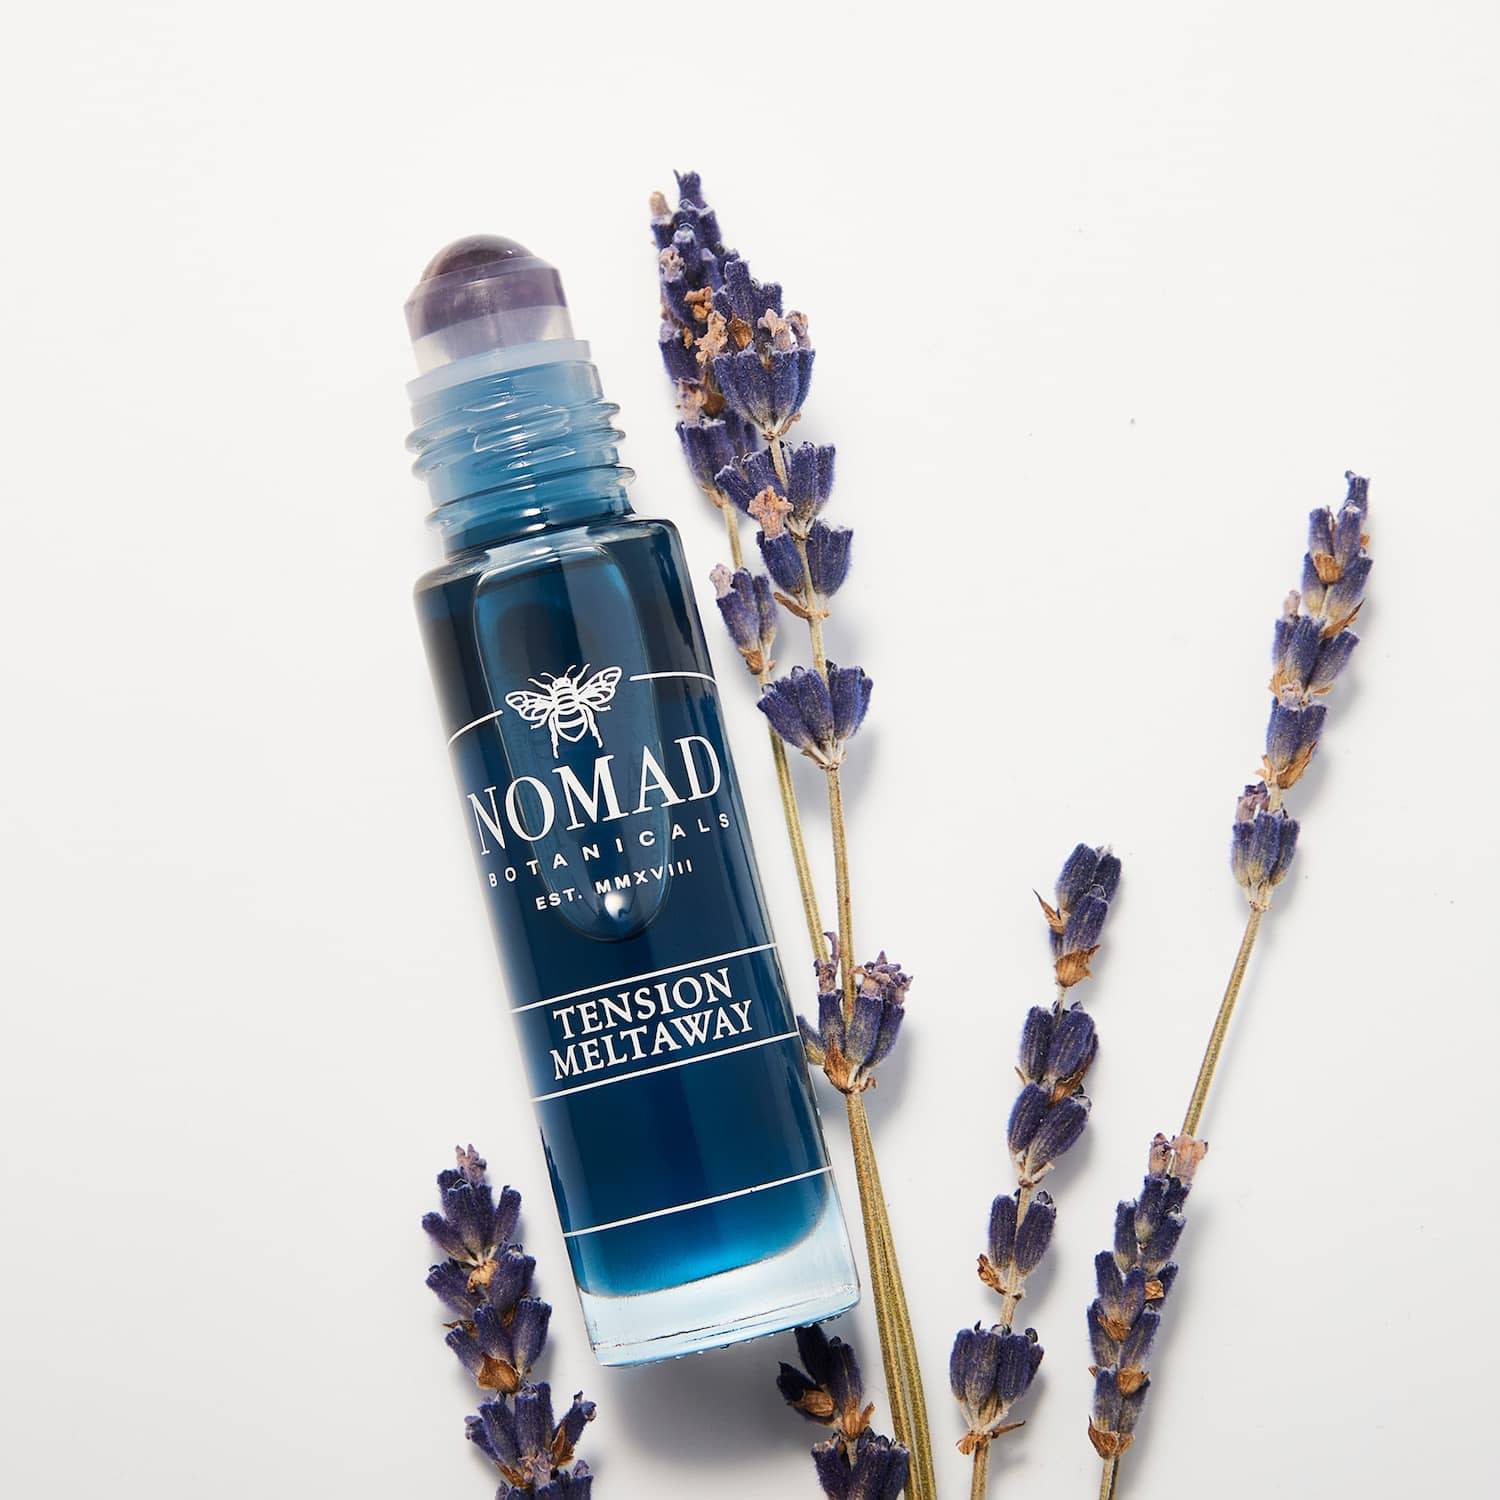 Nomad Botanicals Tension Meltaway Essential Oil Blend with lavender